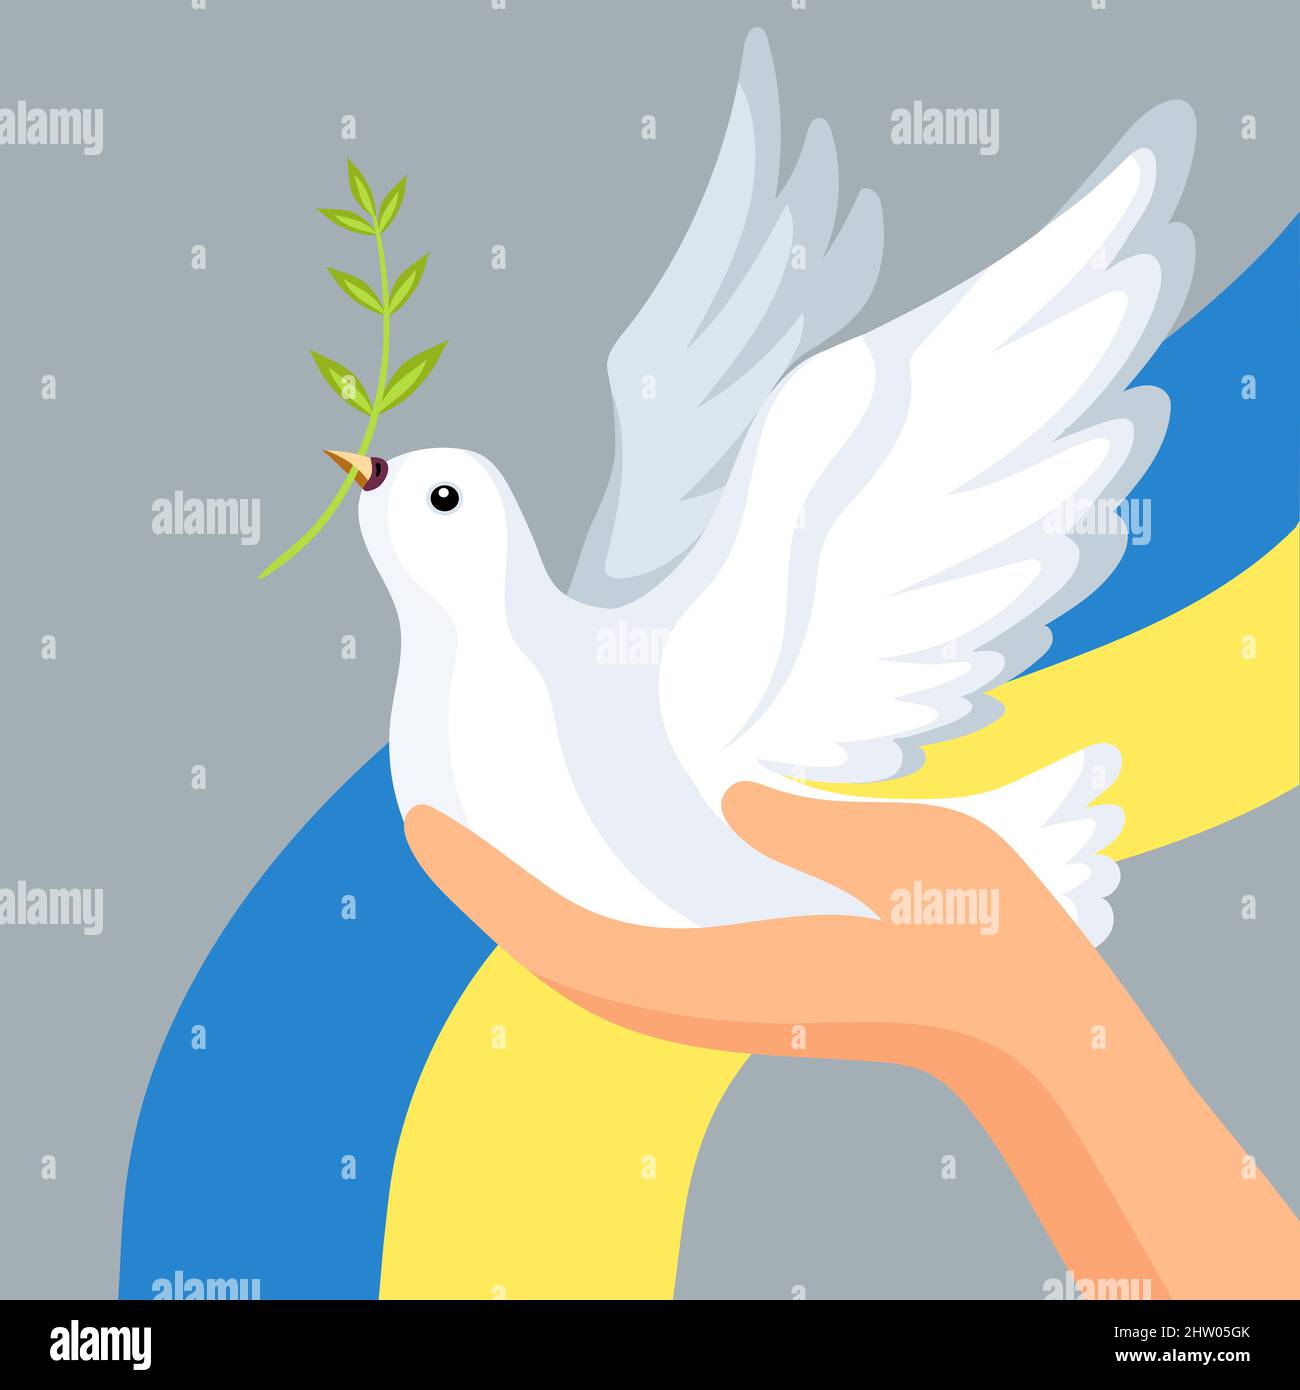 Silhouette einer Taube in den Farben der ukrainischen Flagge. Kampf für den  Frieden. Illustration - a Royalty Free Stock Photo from Photocase